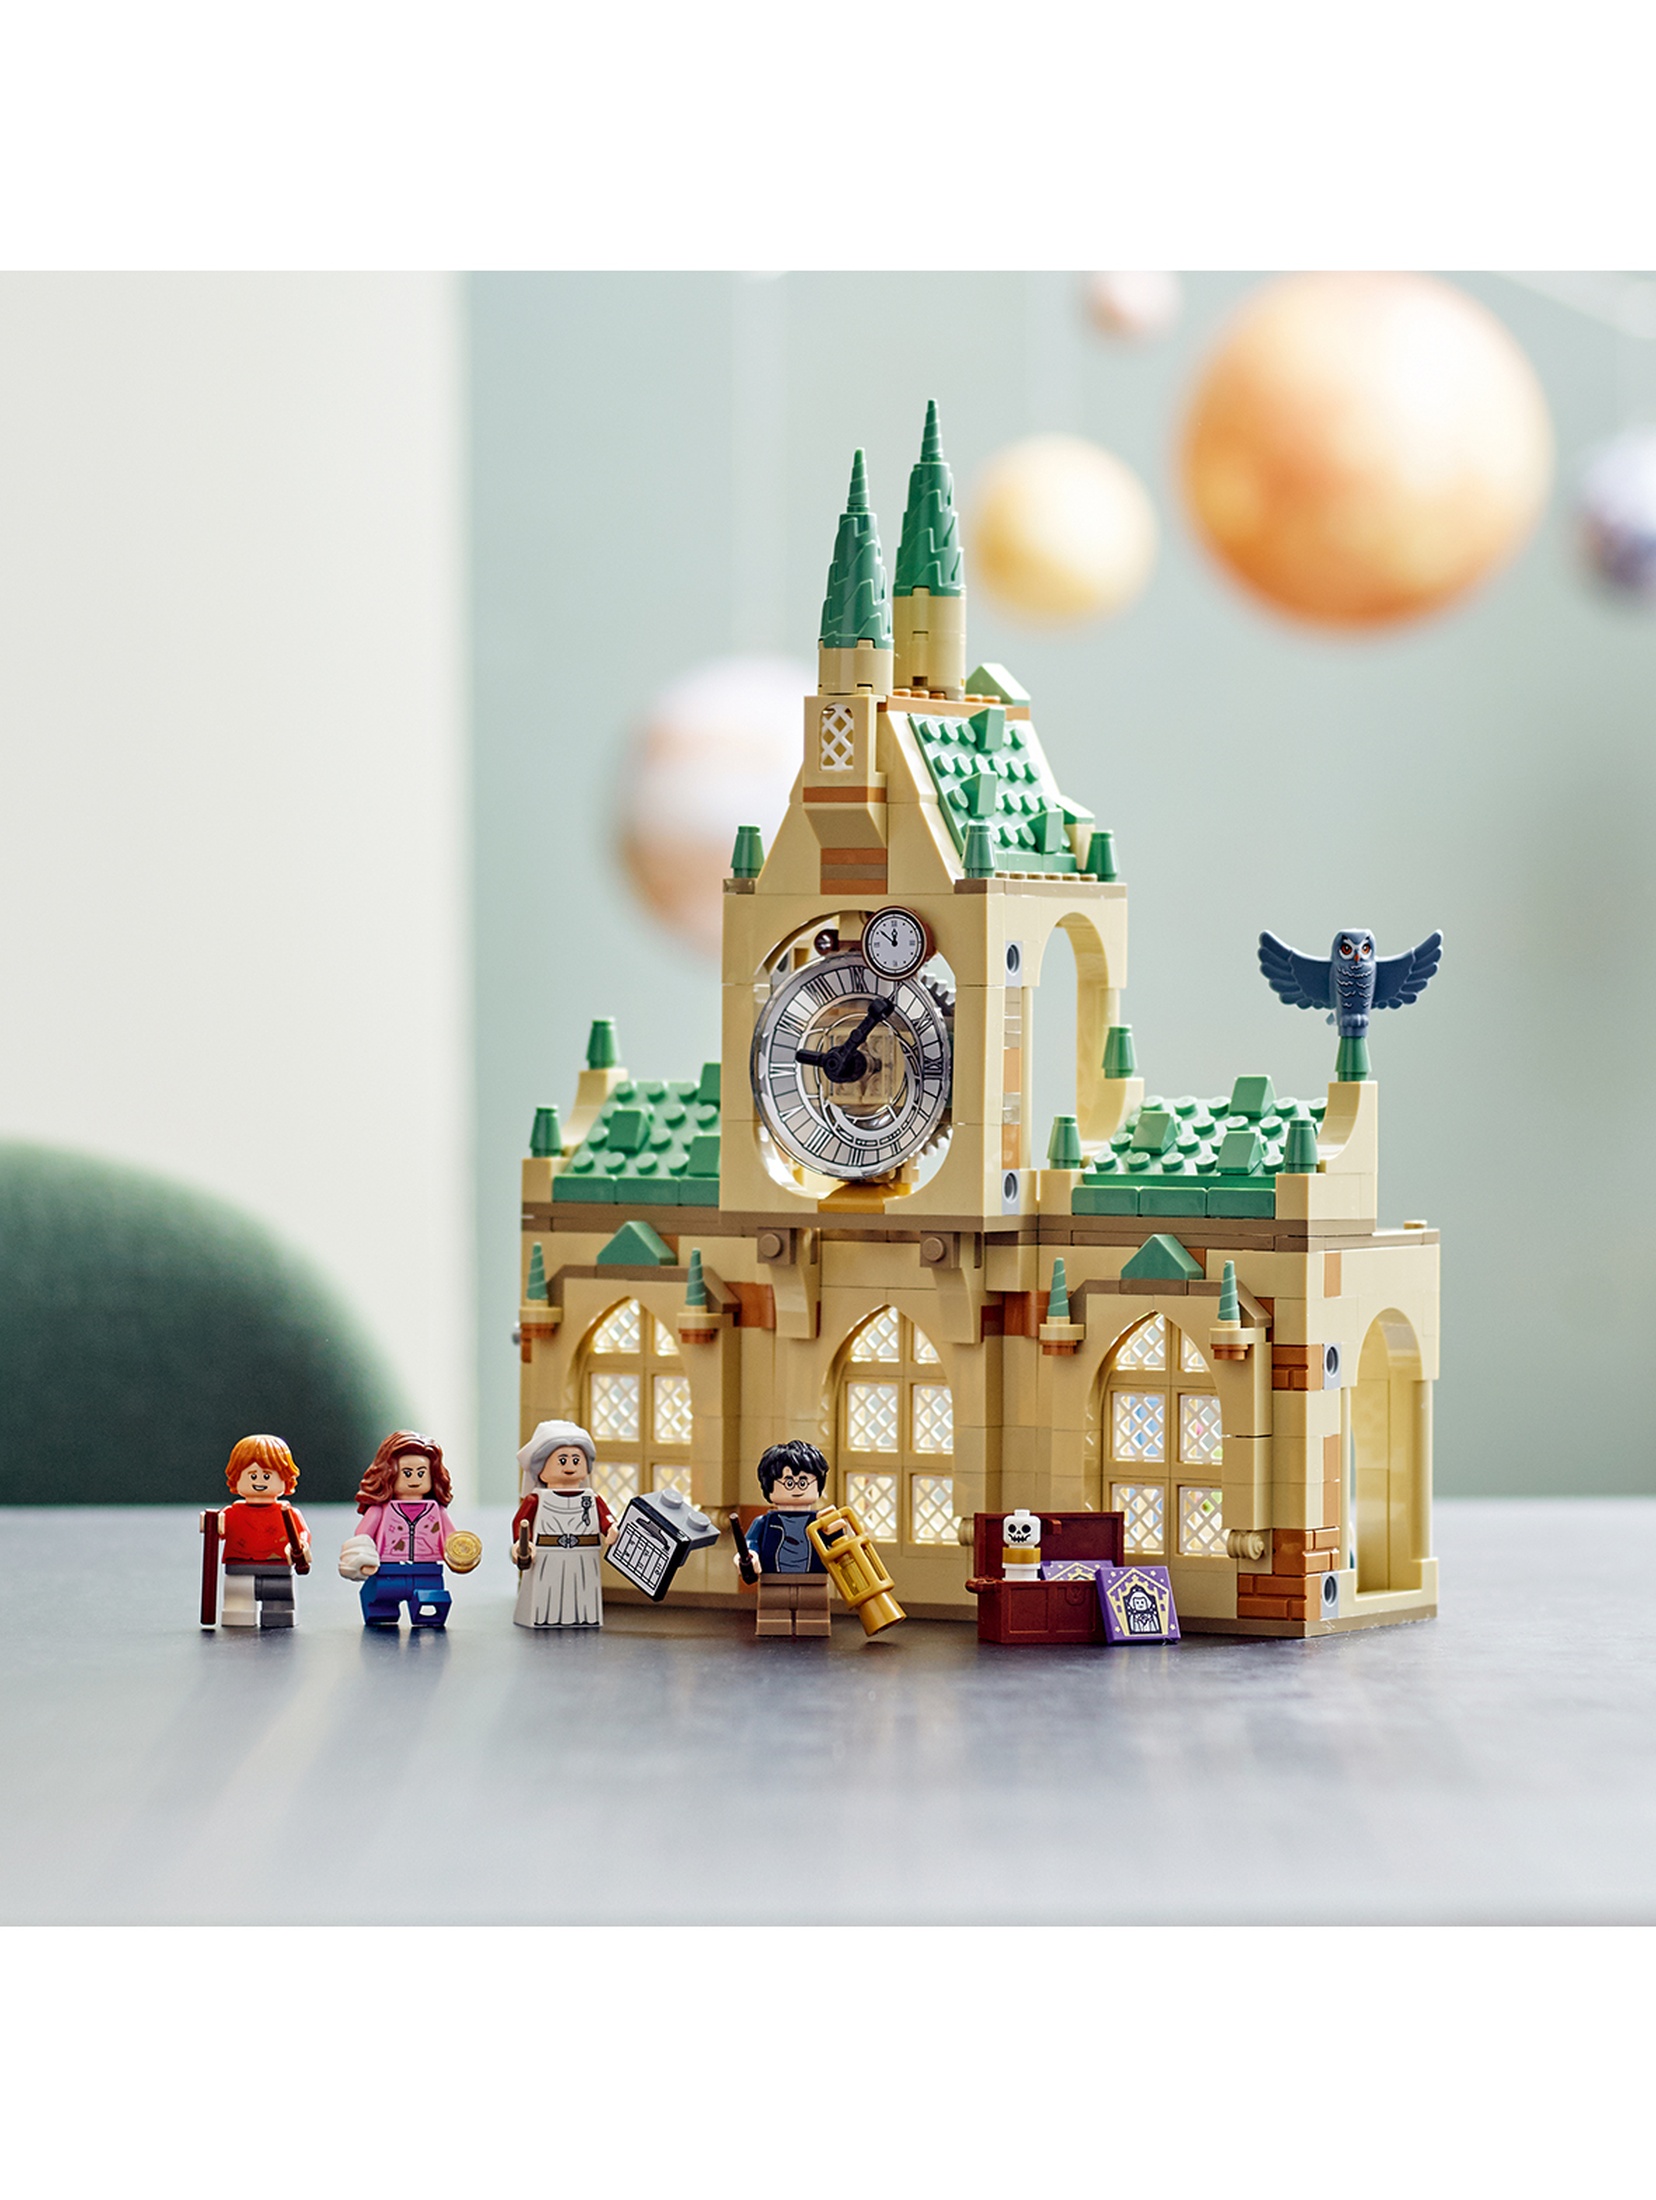 LEGO Harry Potter - Skrzydło szpitalne Hogwartu 76398 - 510 elementów, wiek 8+